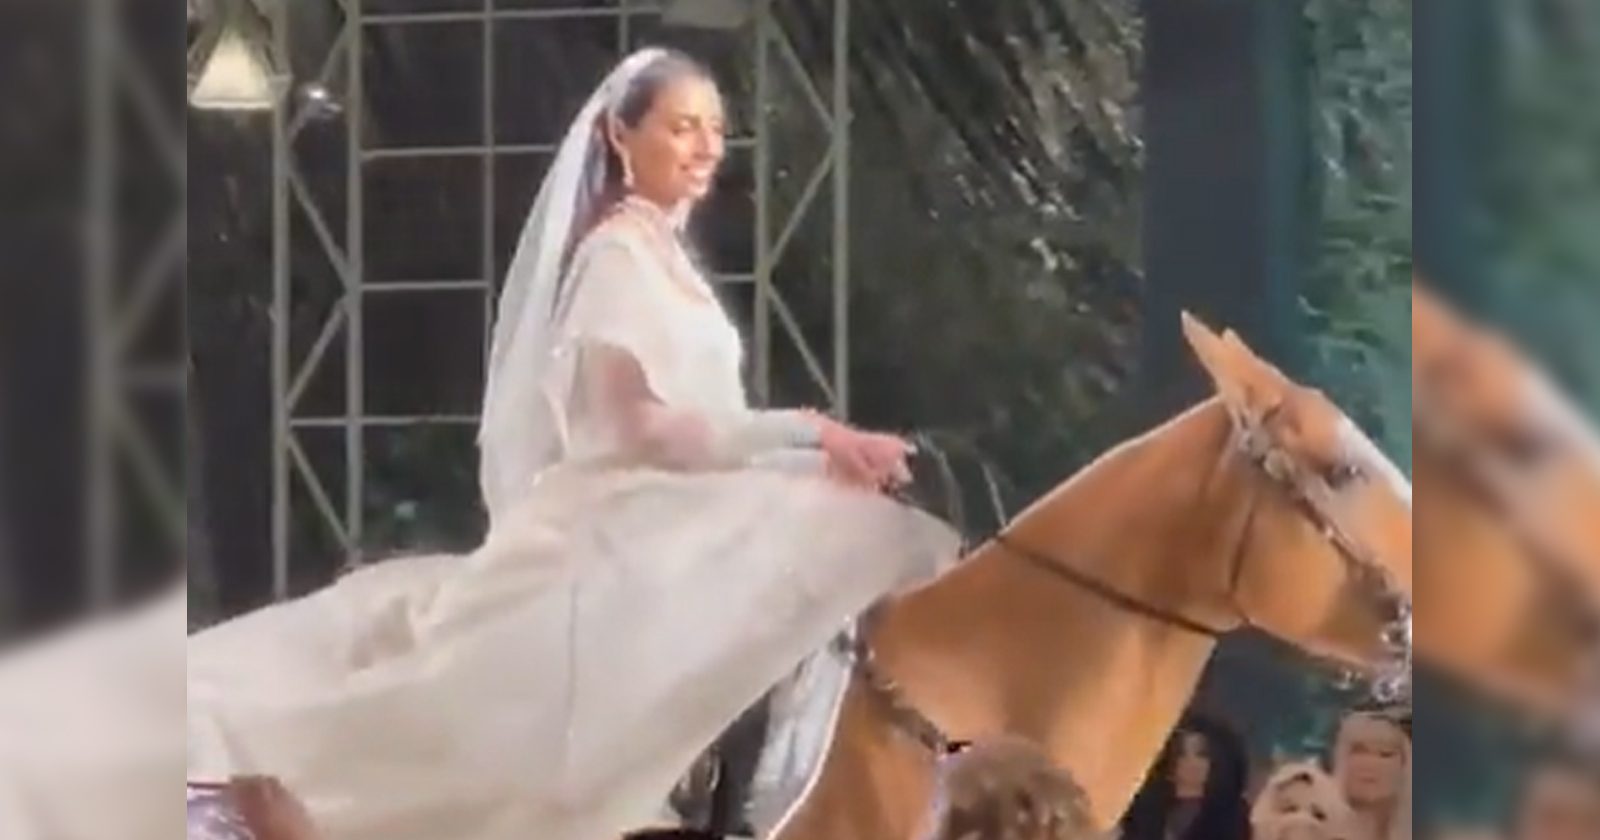 عروس تدخل قاعة الزفاف على ظهر حصان watanserb.com